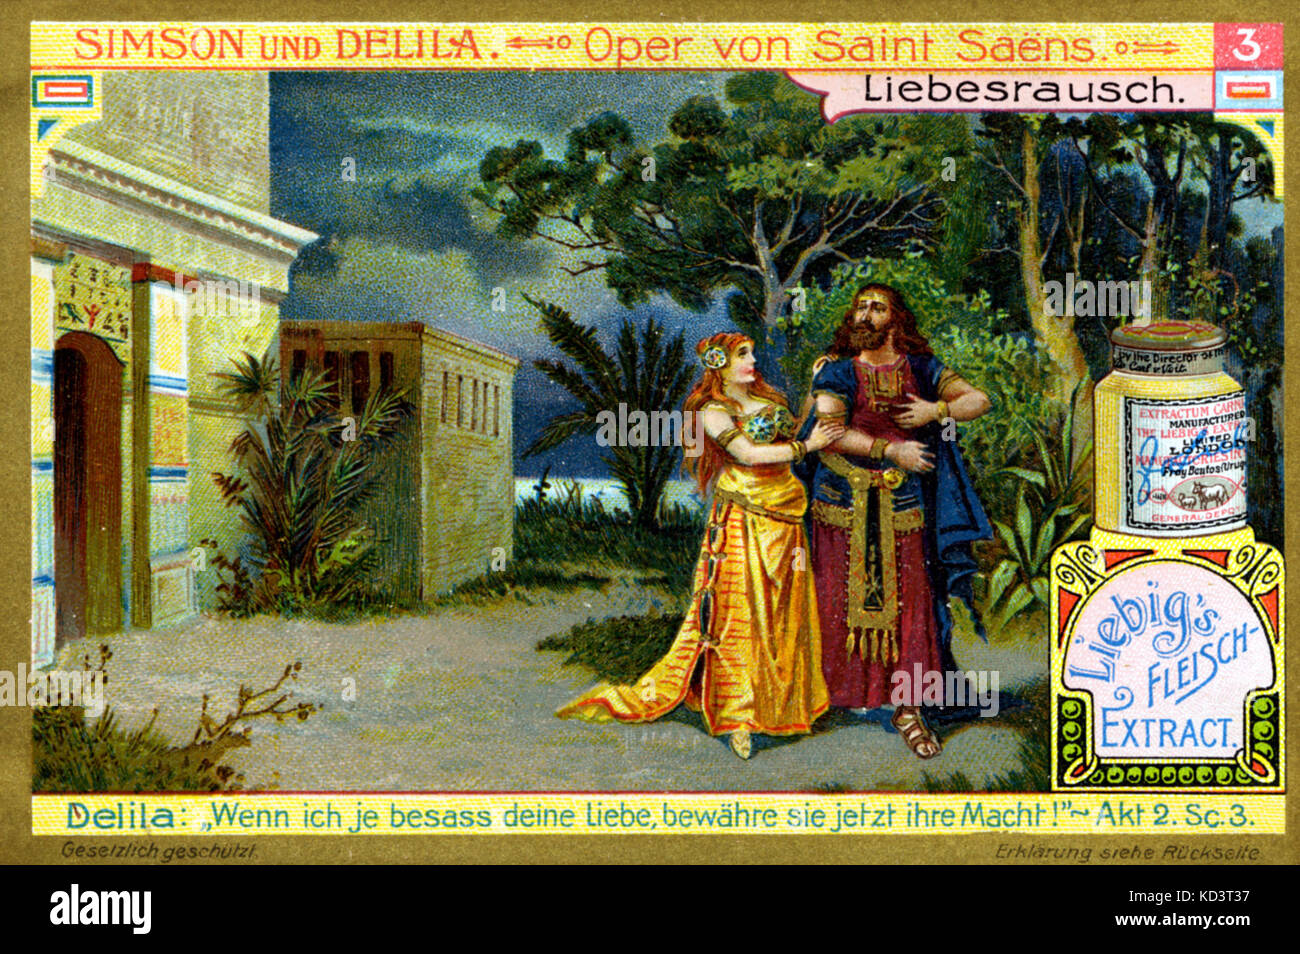 Saint-Saens' opera, 'Samson e Dalilah " Liebig annuncio. Estasi di amore - Atto 2. Scena 3. Dalila: "Se ho mai posseduto il vostro amore, può la sua potenza ora essere testato!". Il compositore francese (1835-1921) Foto Stock